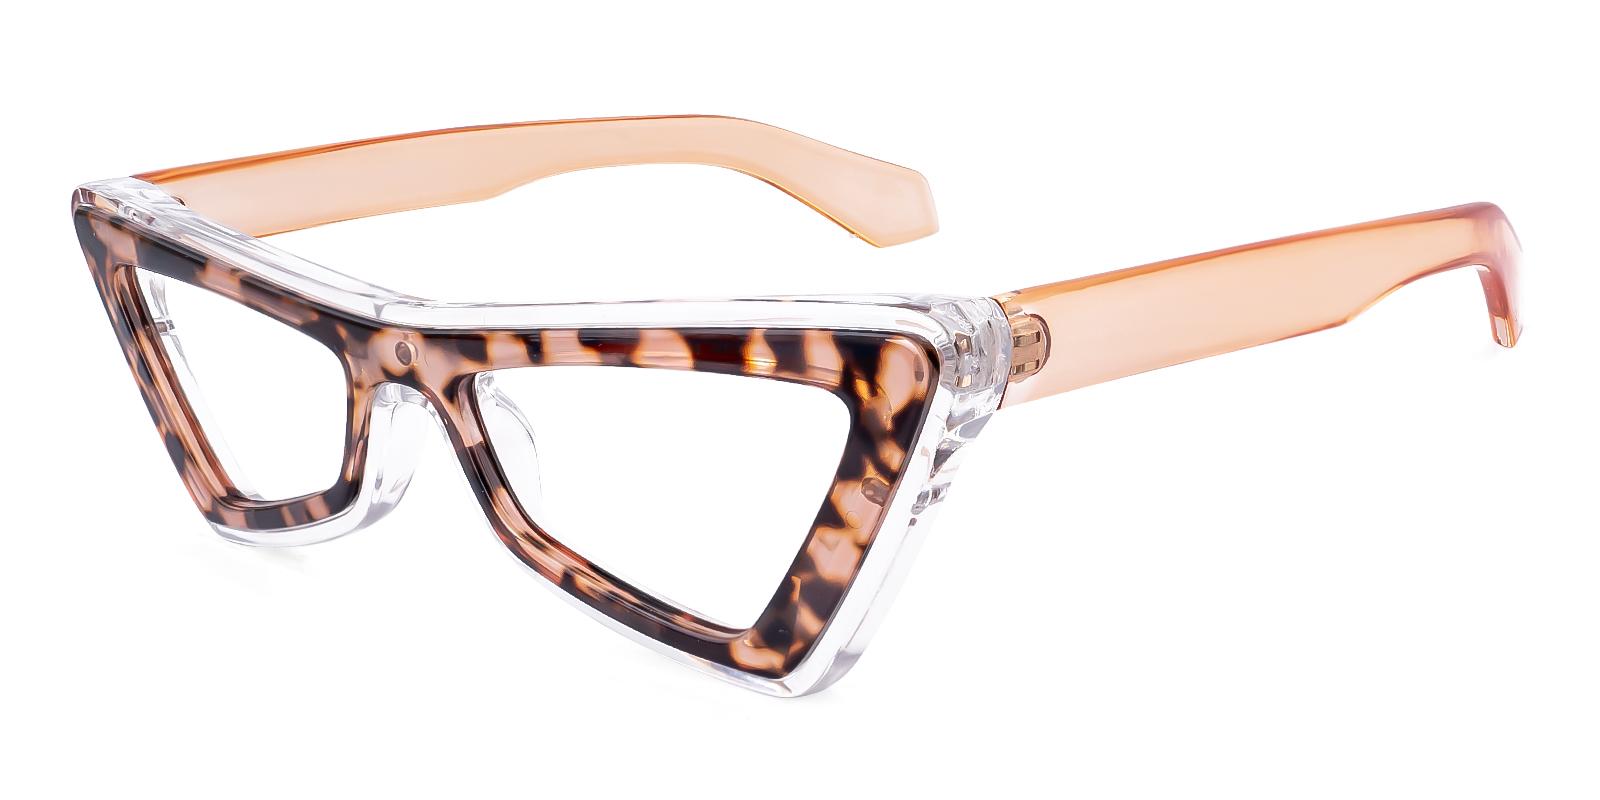 Alleloory Tortoise Acetate Eyeglasses , UniversalBridgeFit Frames from ABBE Glasses